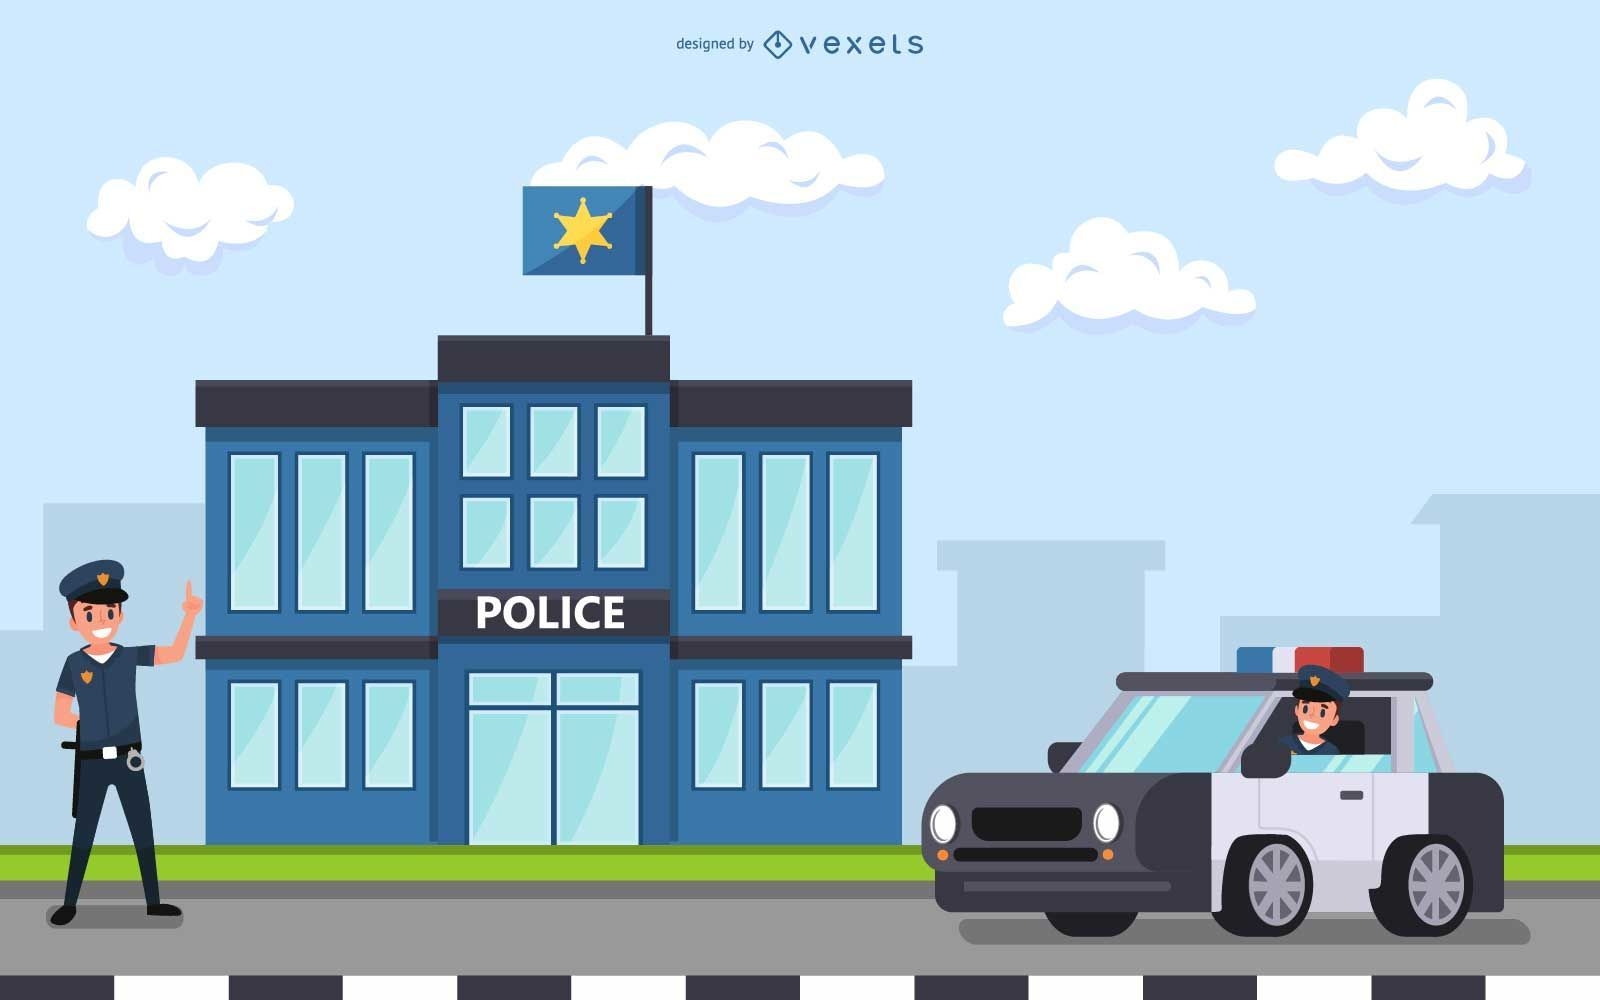 Illustrationsdesign der Polizeistation